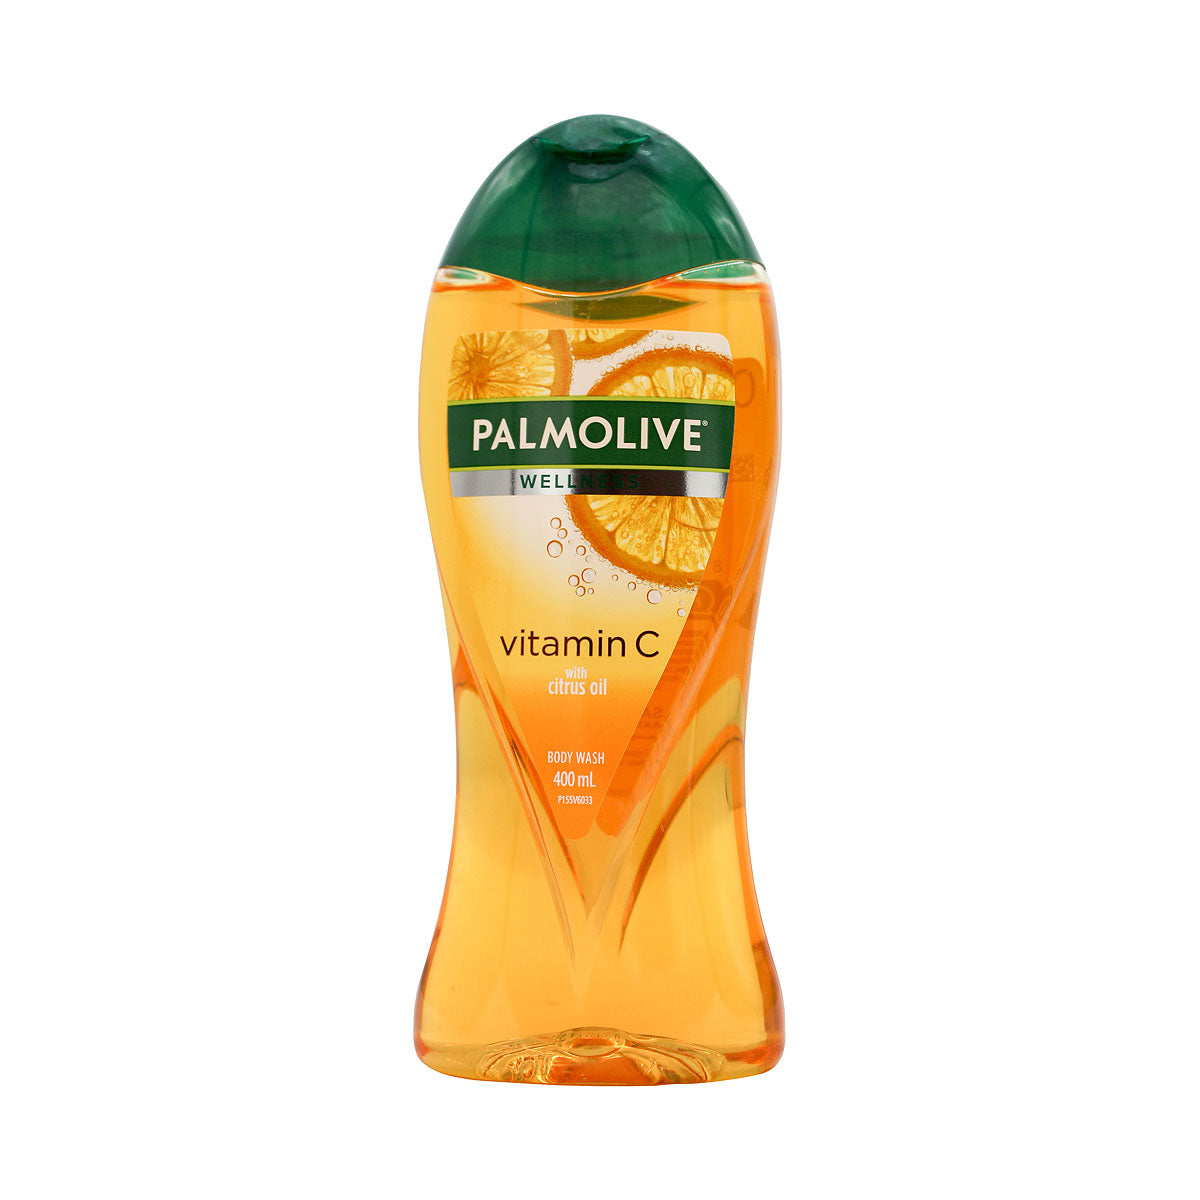 Palmolive Body Wash Vitamin C Citrus Oil 400mL